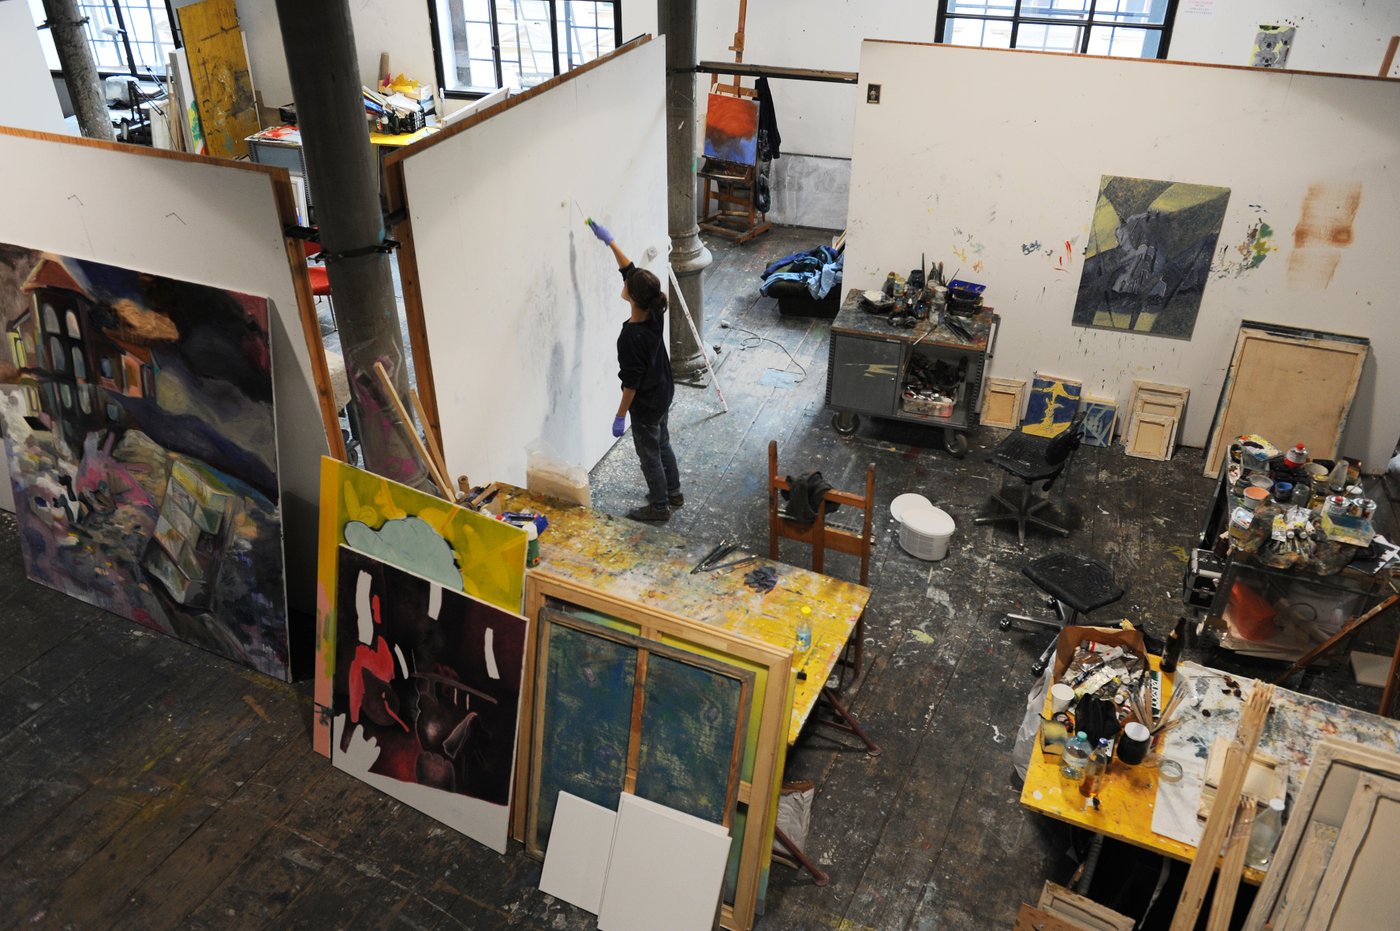 Arbeitsplatz einer Malerin von einer Galerie aus fotografiert. Stapel von halb fertigen Leinwänden stehen herum, Tische mit Farben und Pinseln. Der Boden ist übersät mit Farbspritzern. Eine Studentin mit schwarzer Kleidung steht vor einer weißen Wand und zeichnet.